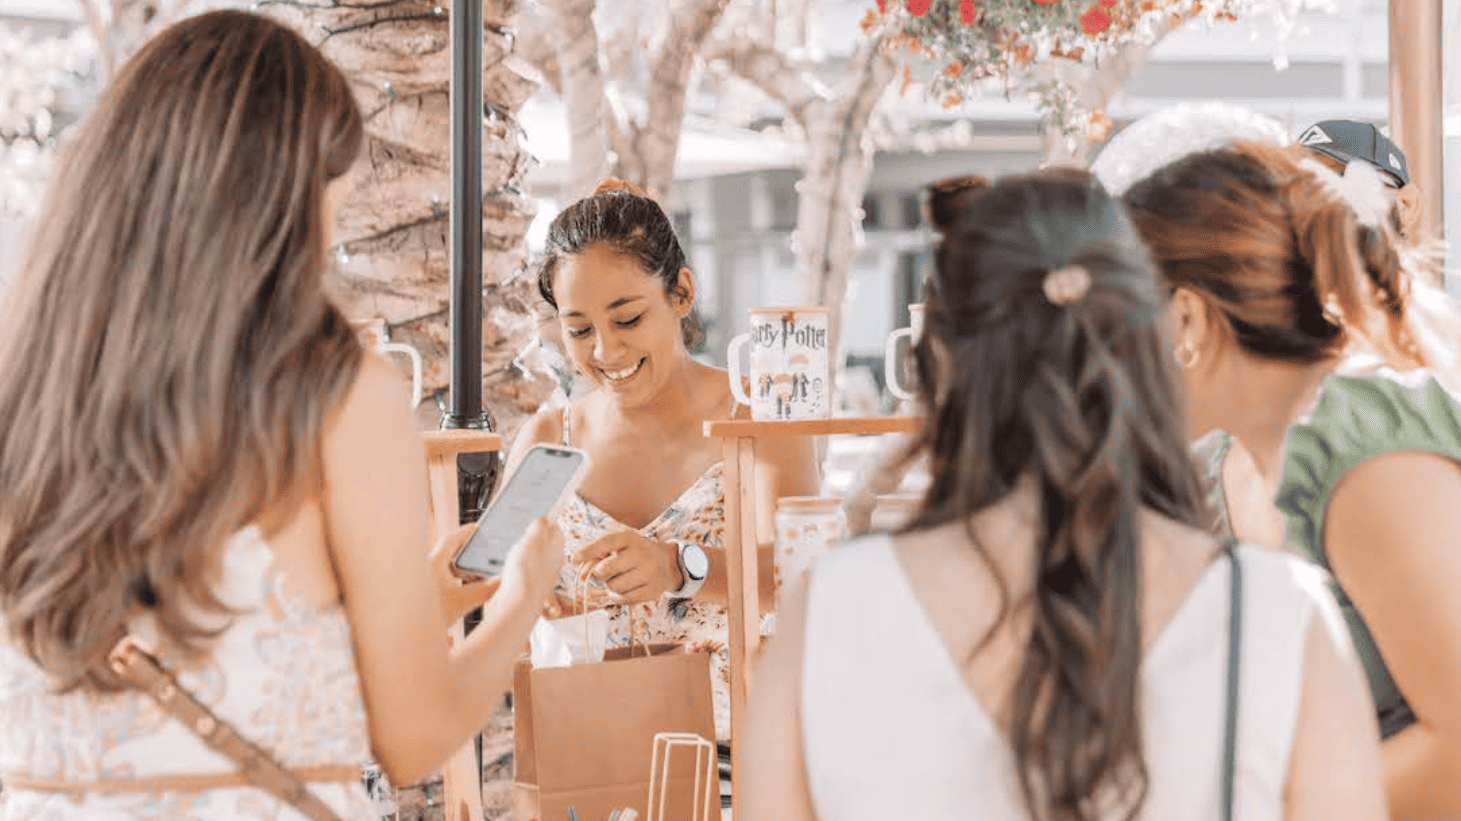 women shopping at an outdoor market